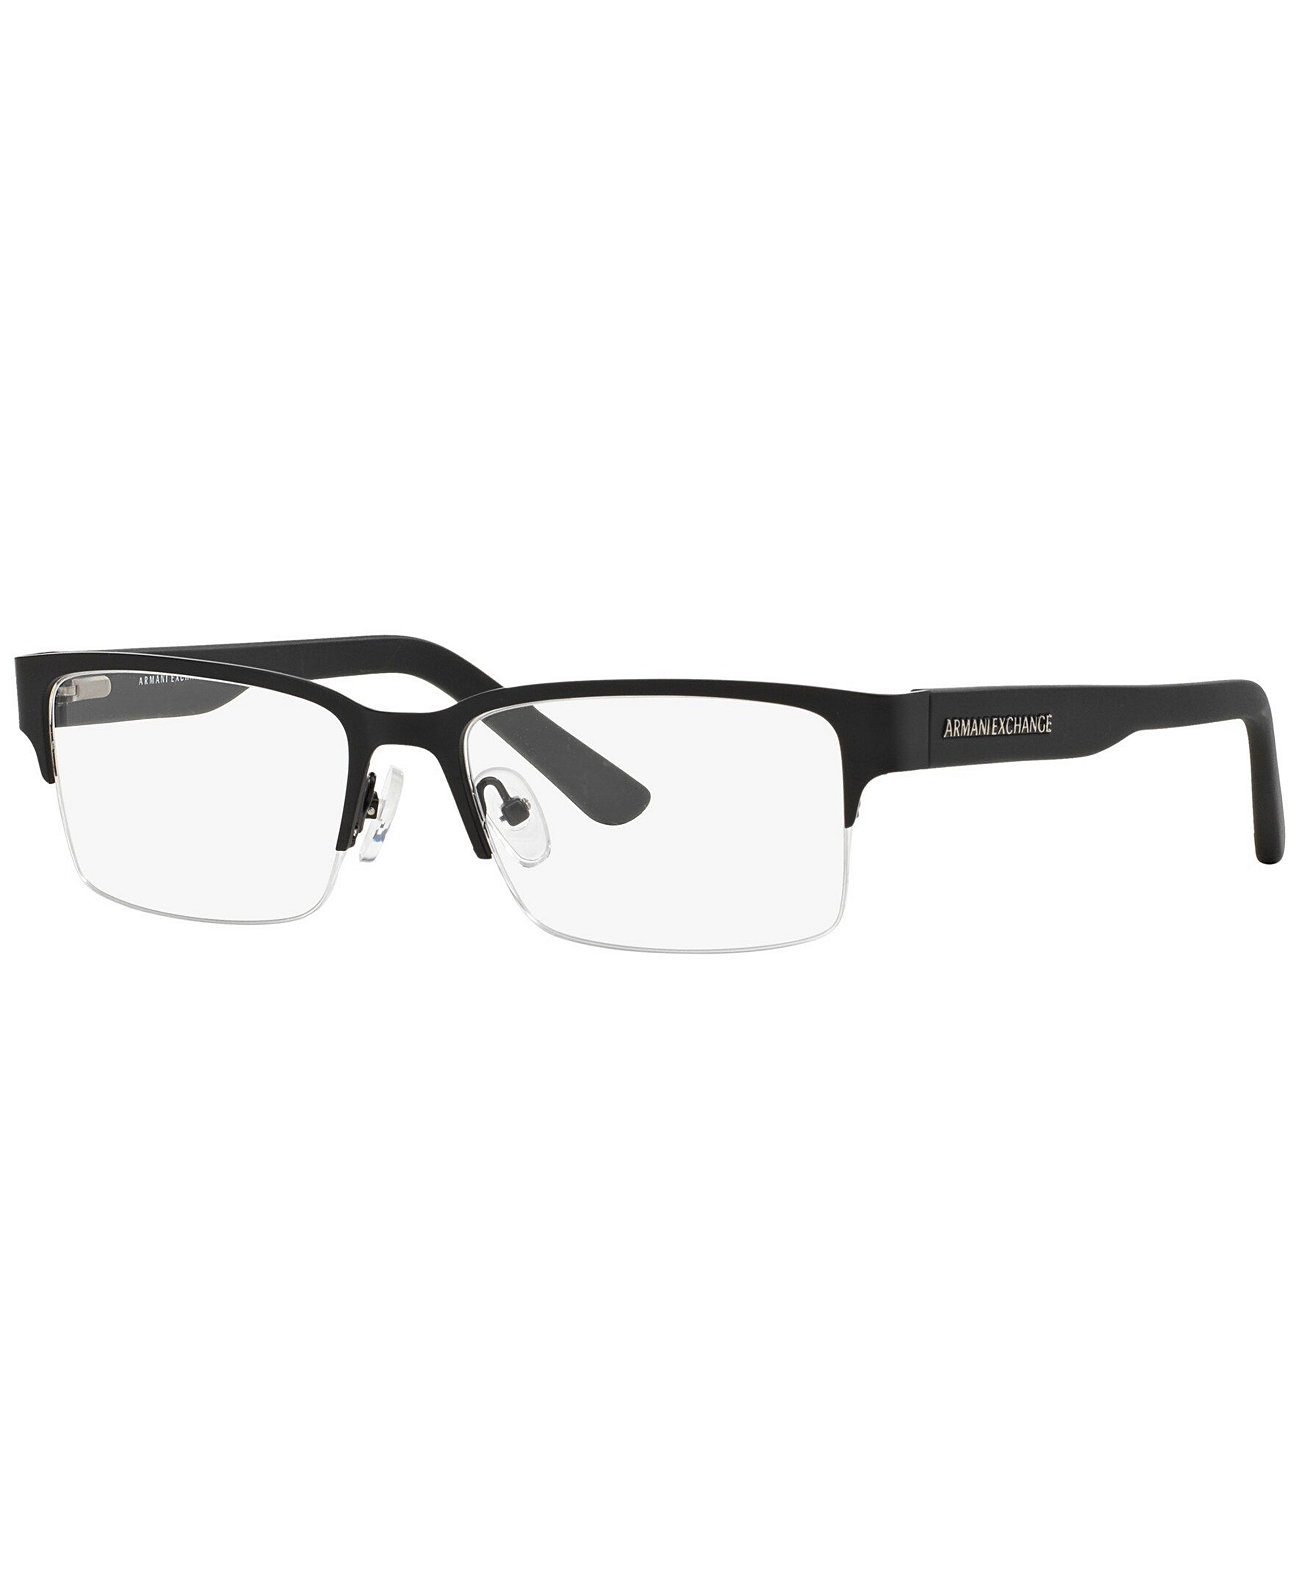 Мужские прямоугольные очки Armani Exchange AX1014 Armani